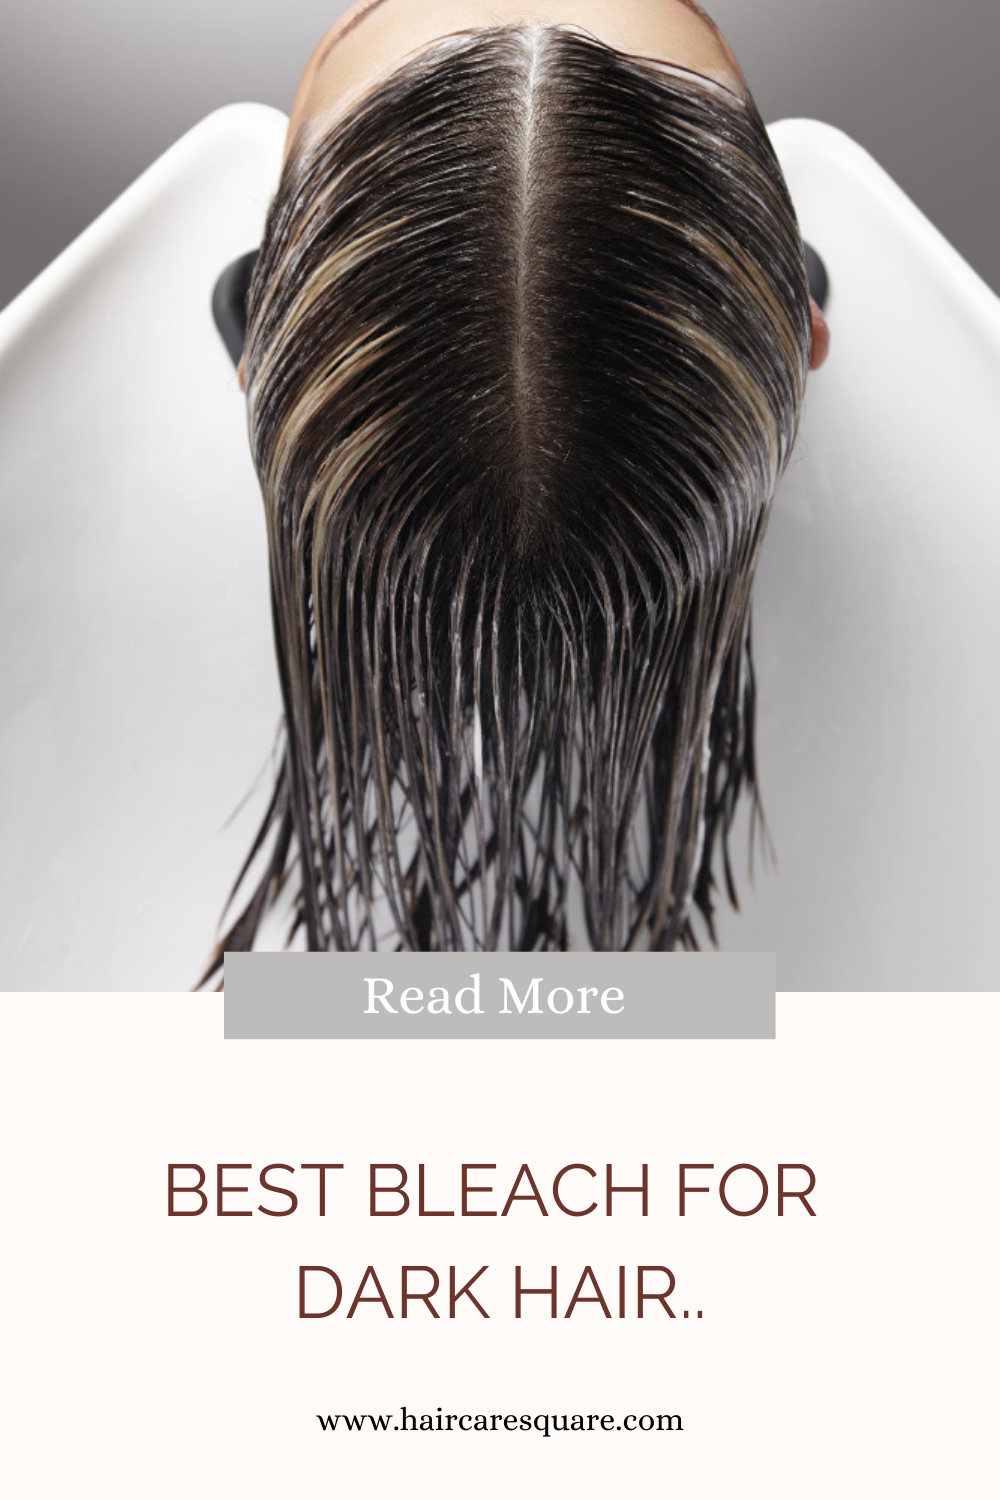 Best bleach for dark hair at home